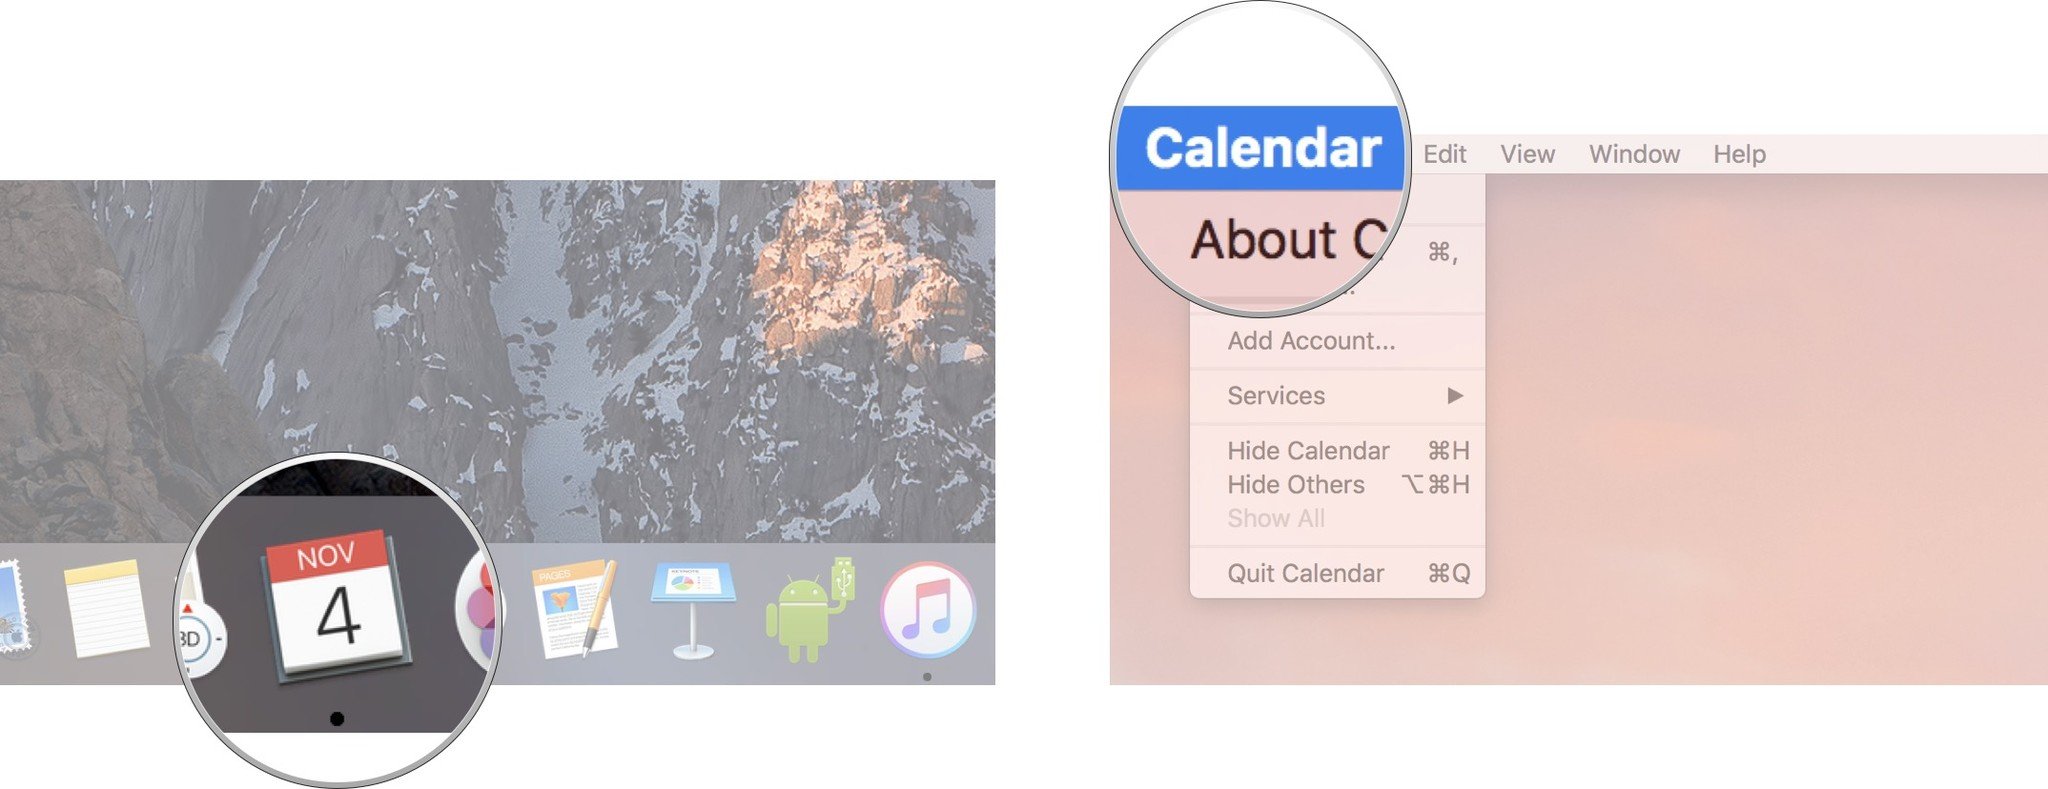 Запустите приложение «Календарь» и нажмите «Календарь» в верхней строке меню.